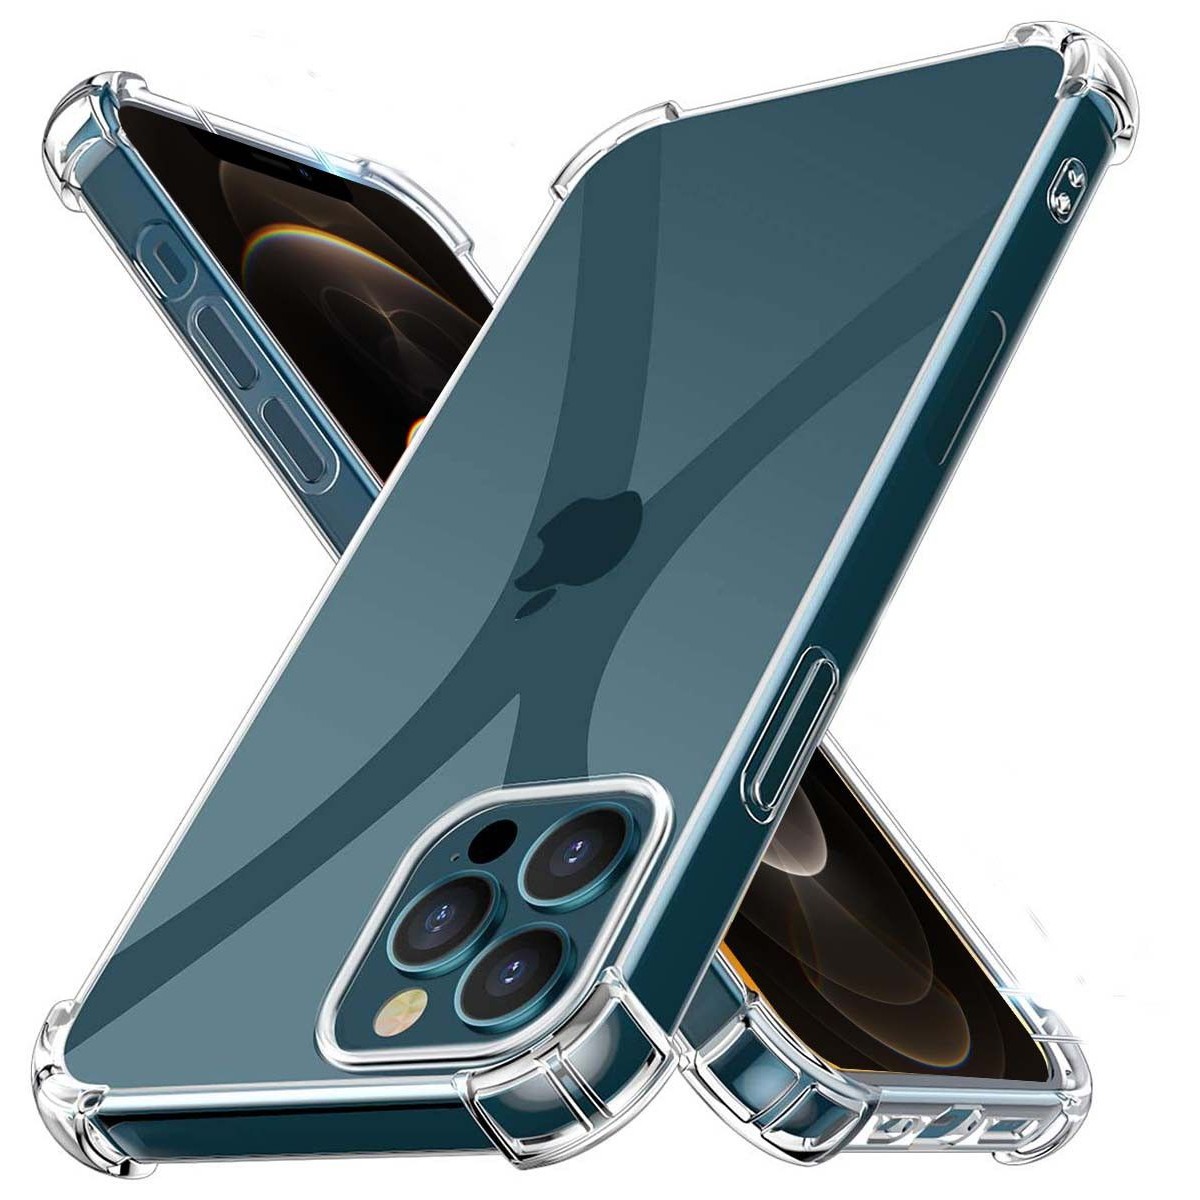 Funda Gel Tpu Anti-Shock Transparente para Iphone 12 Pro Max (6.7)